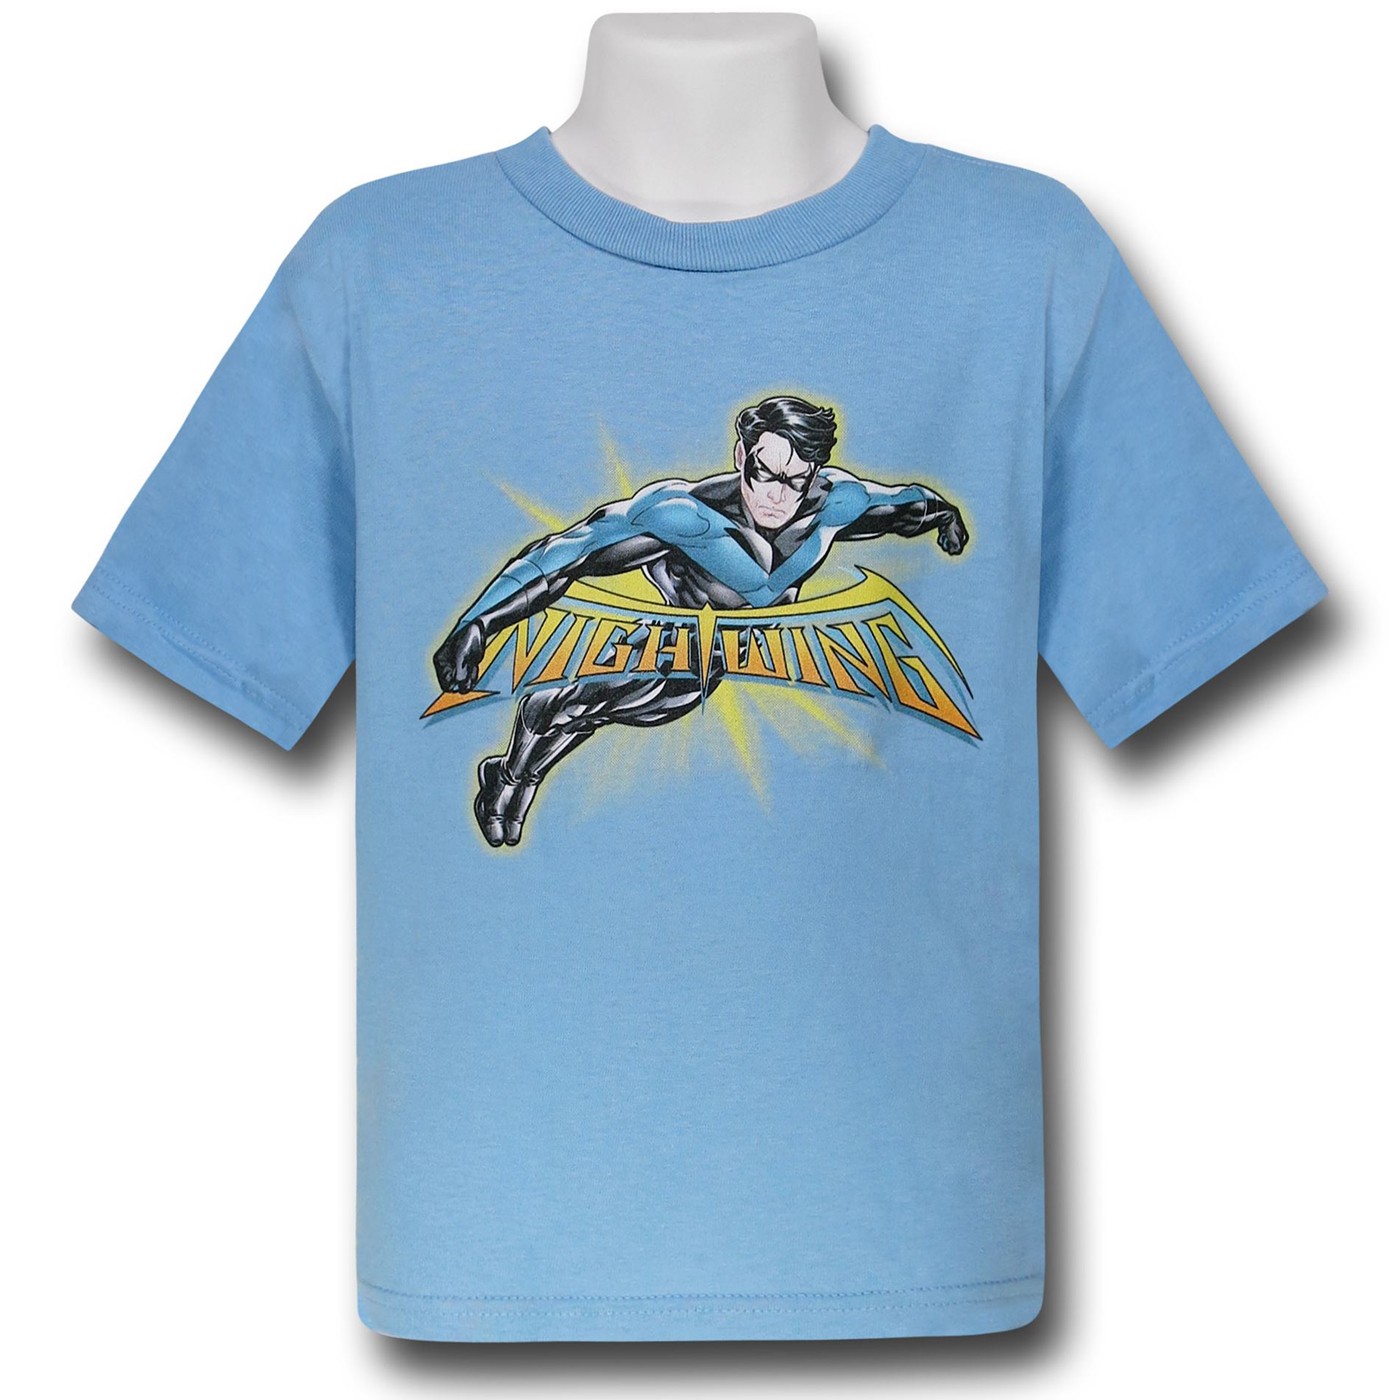 Nightwing Behind Logo Kids T-Shirt